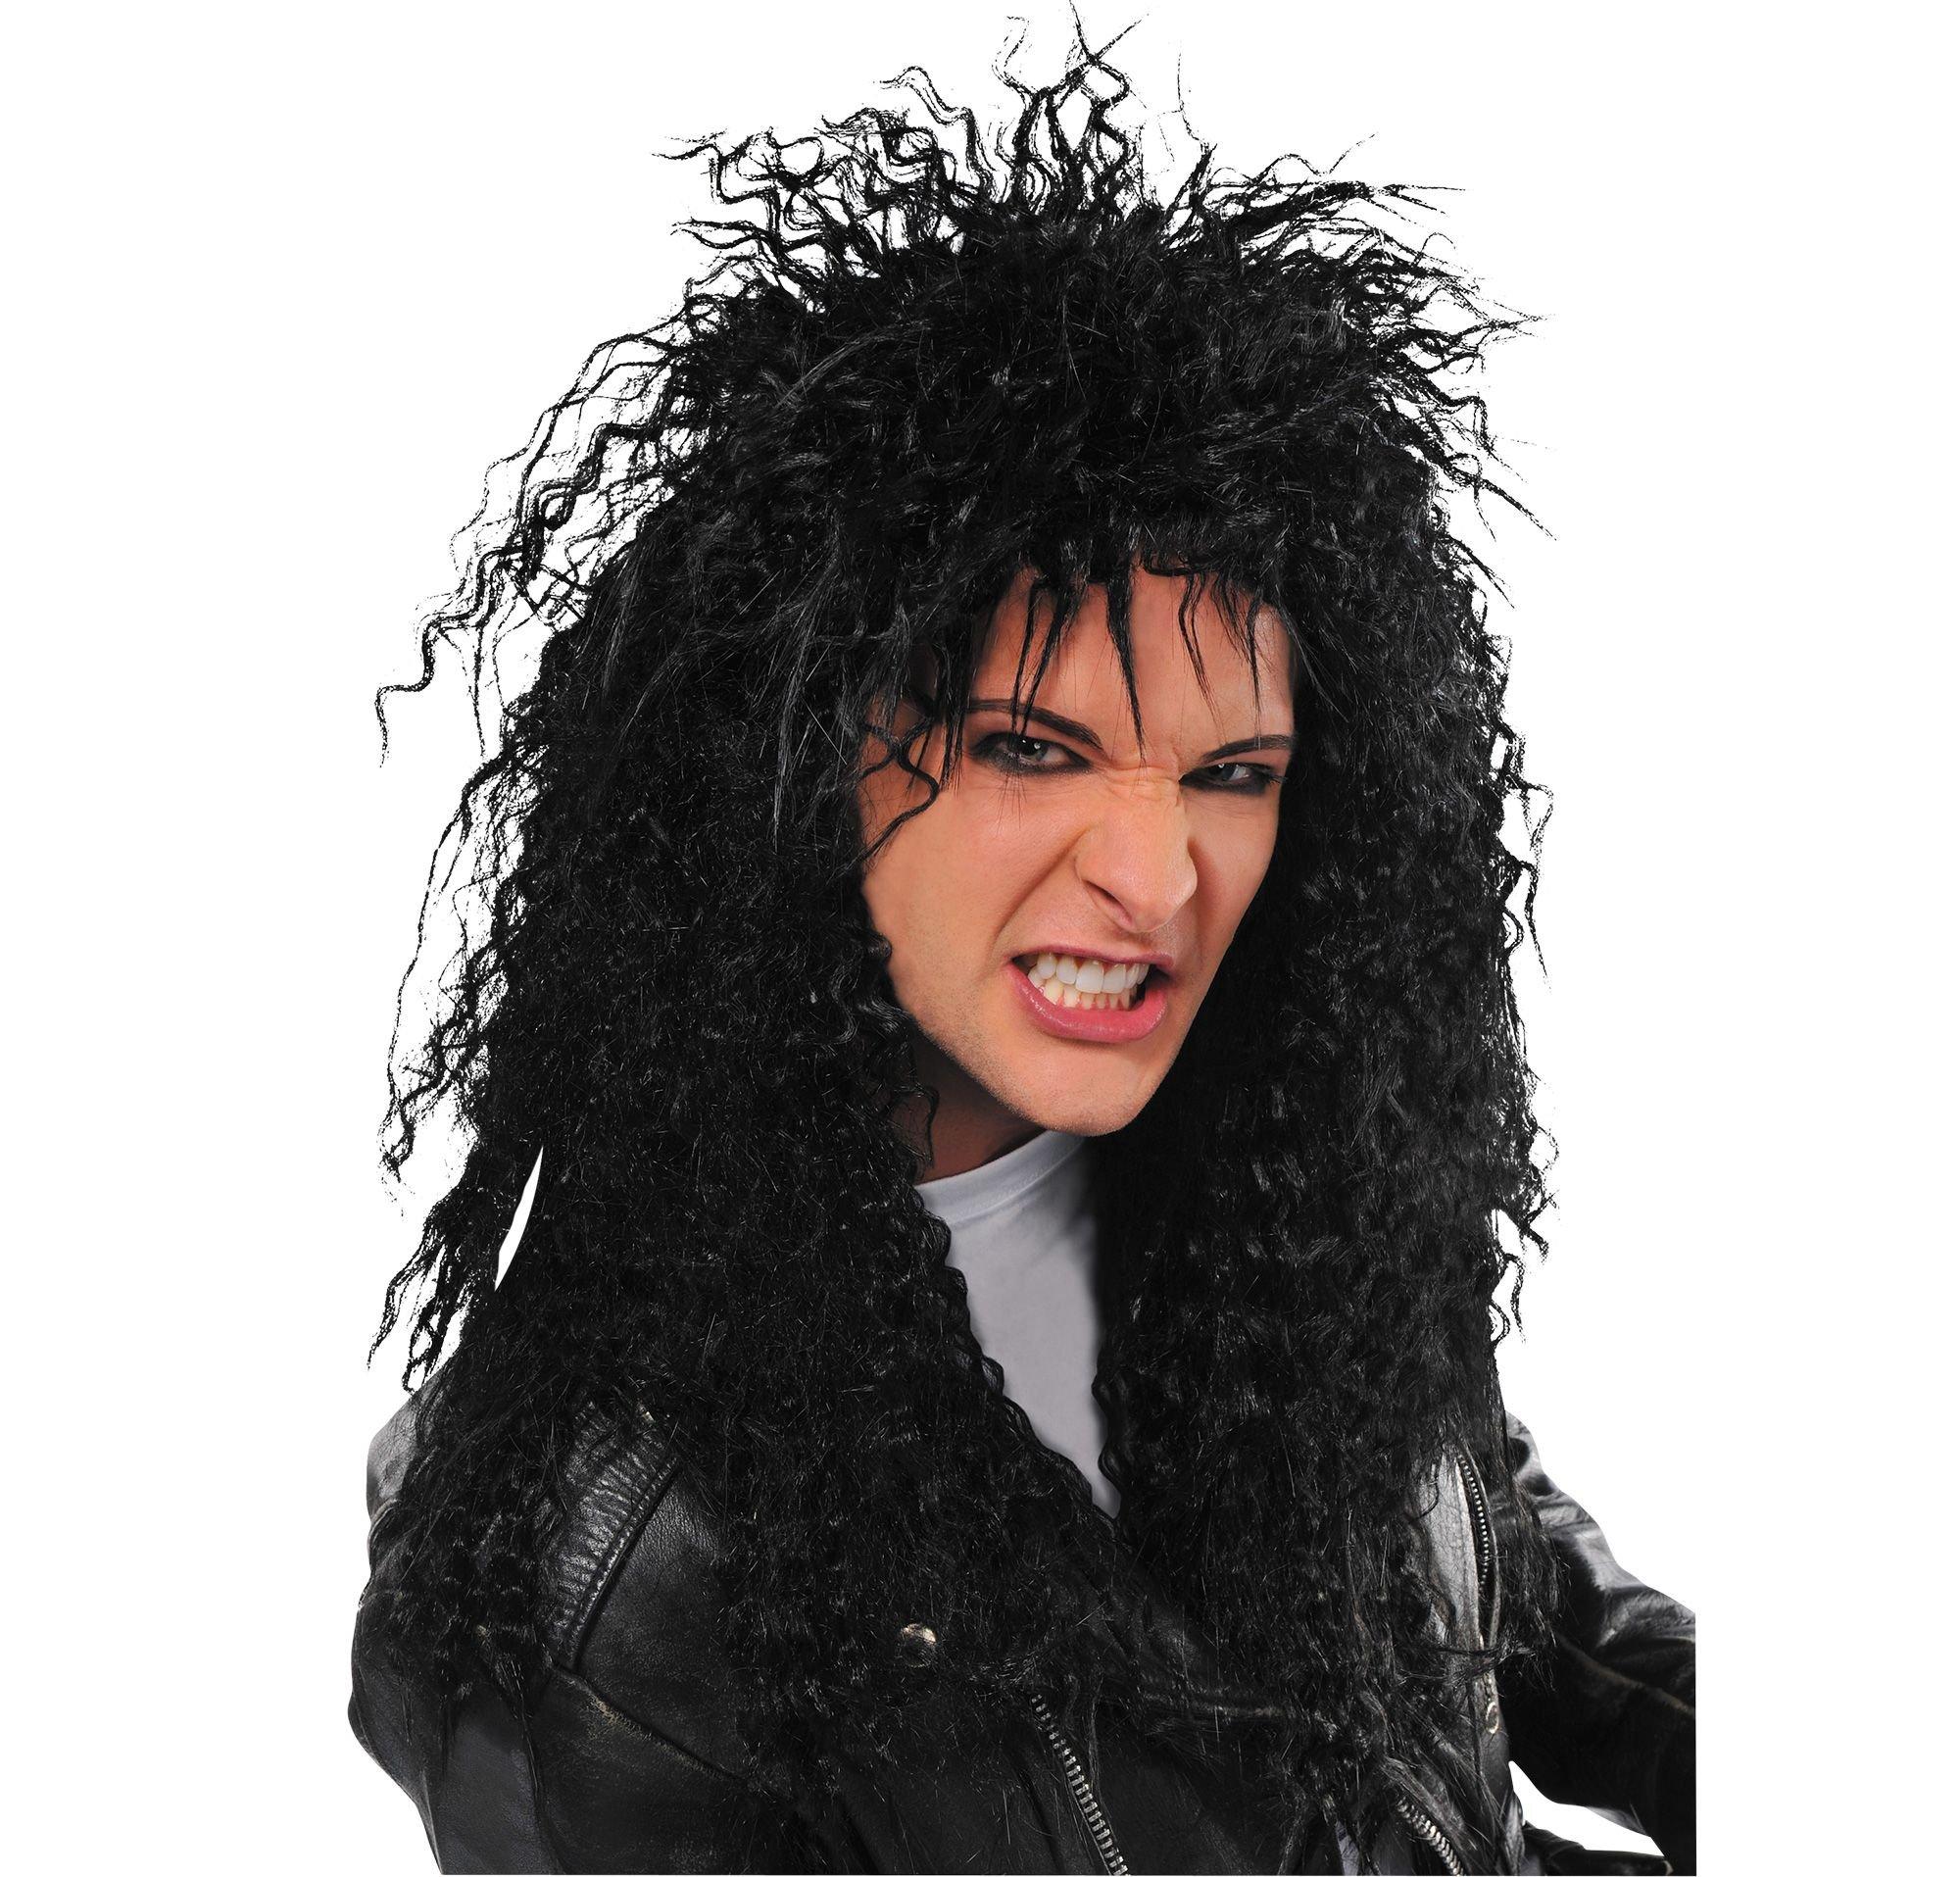 Black Heavy Metal Rocker Wig